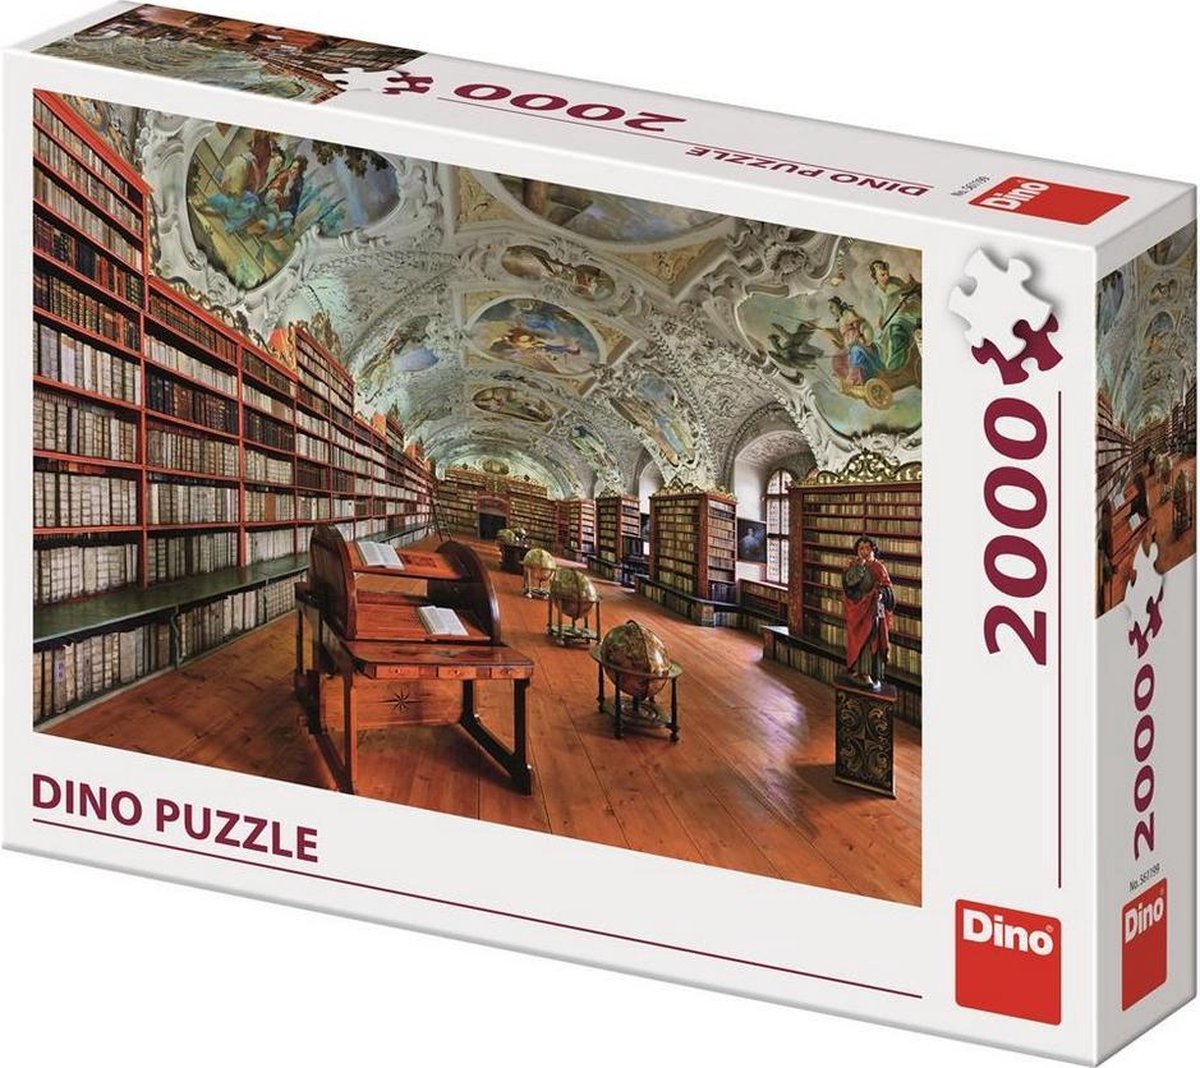 Bibliothèque Dino Puzzle Strahov - Salle théologique 2000 pièces | bol